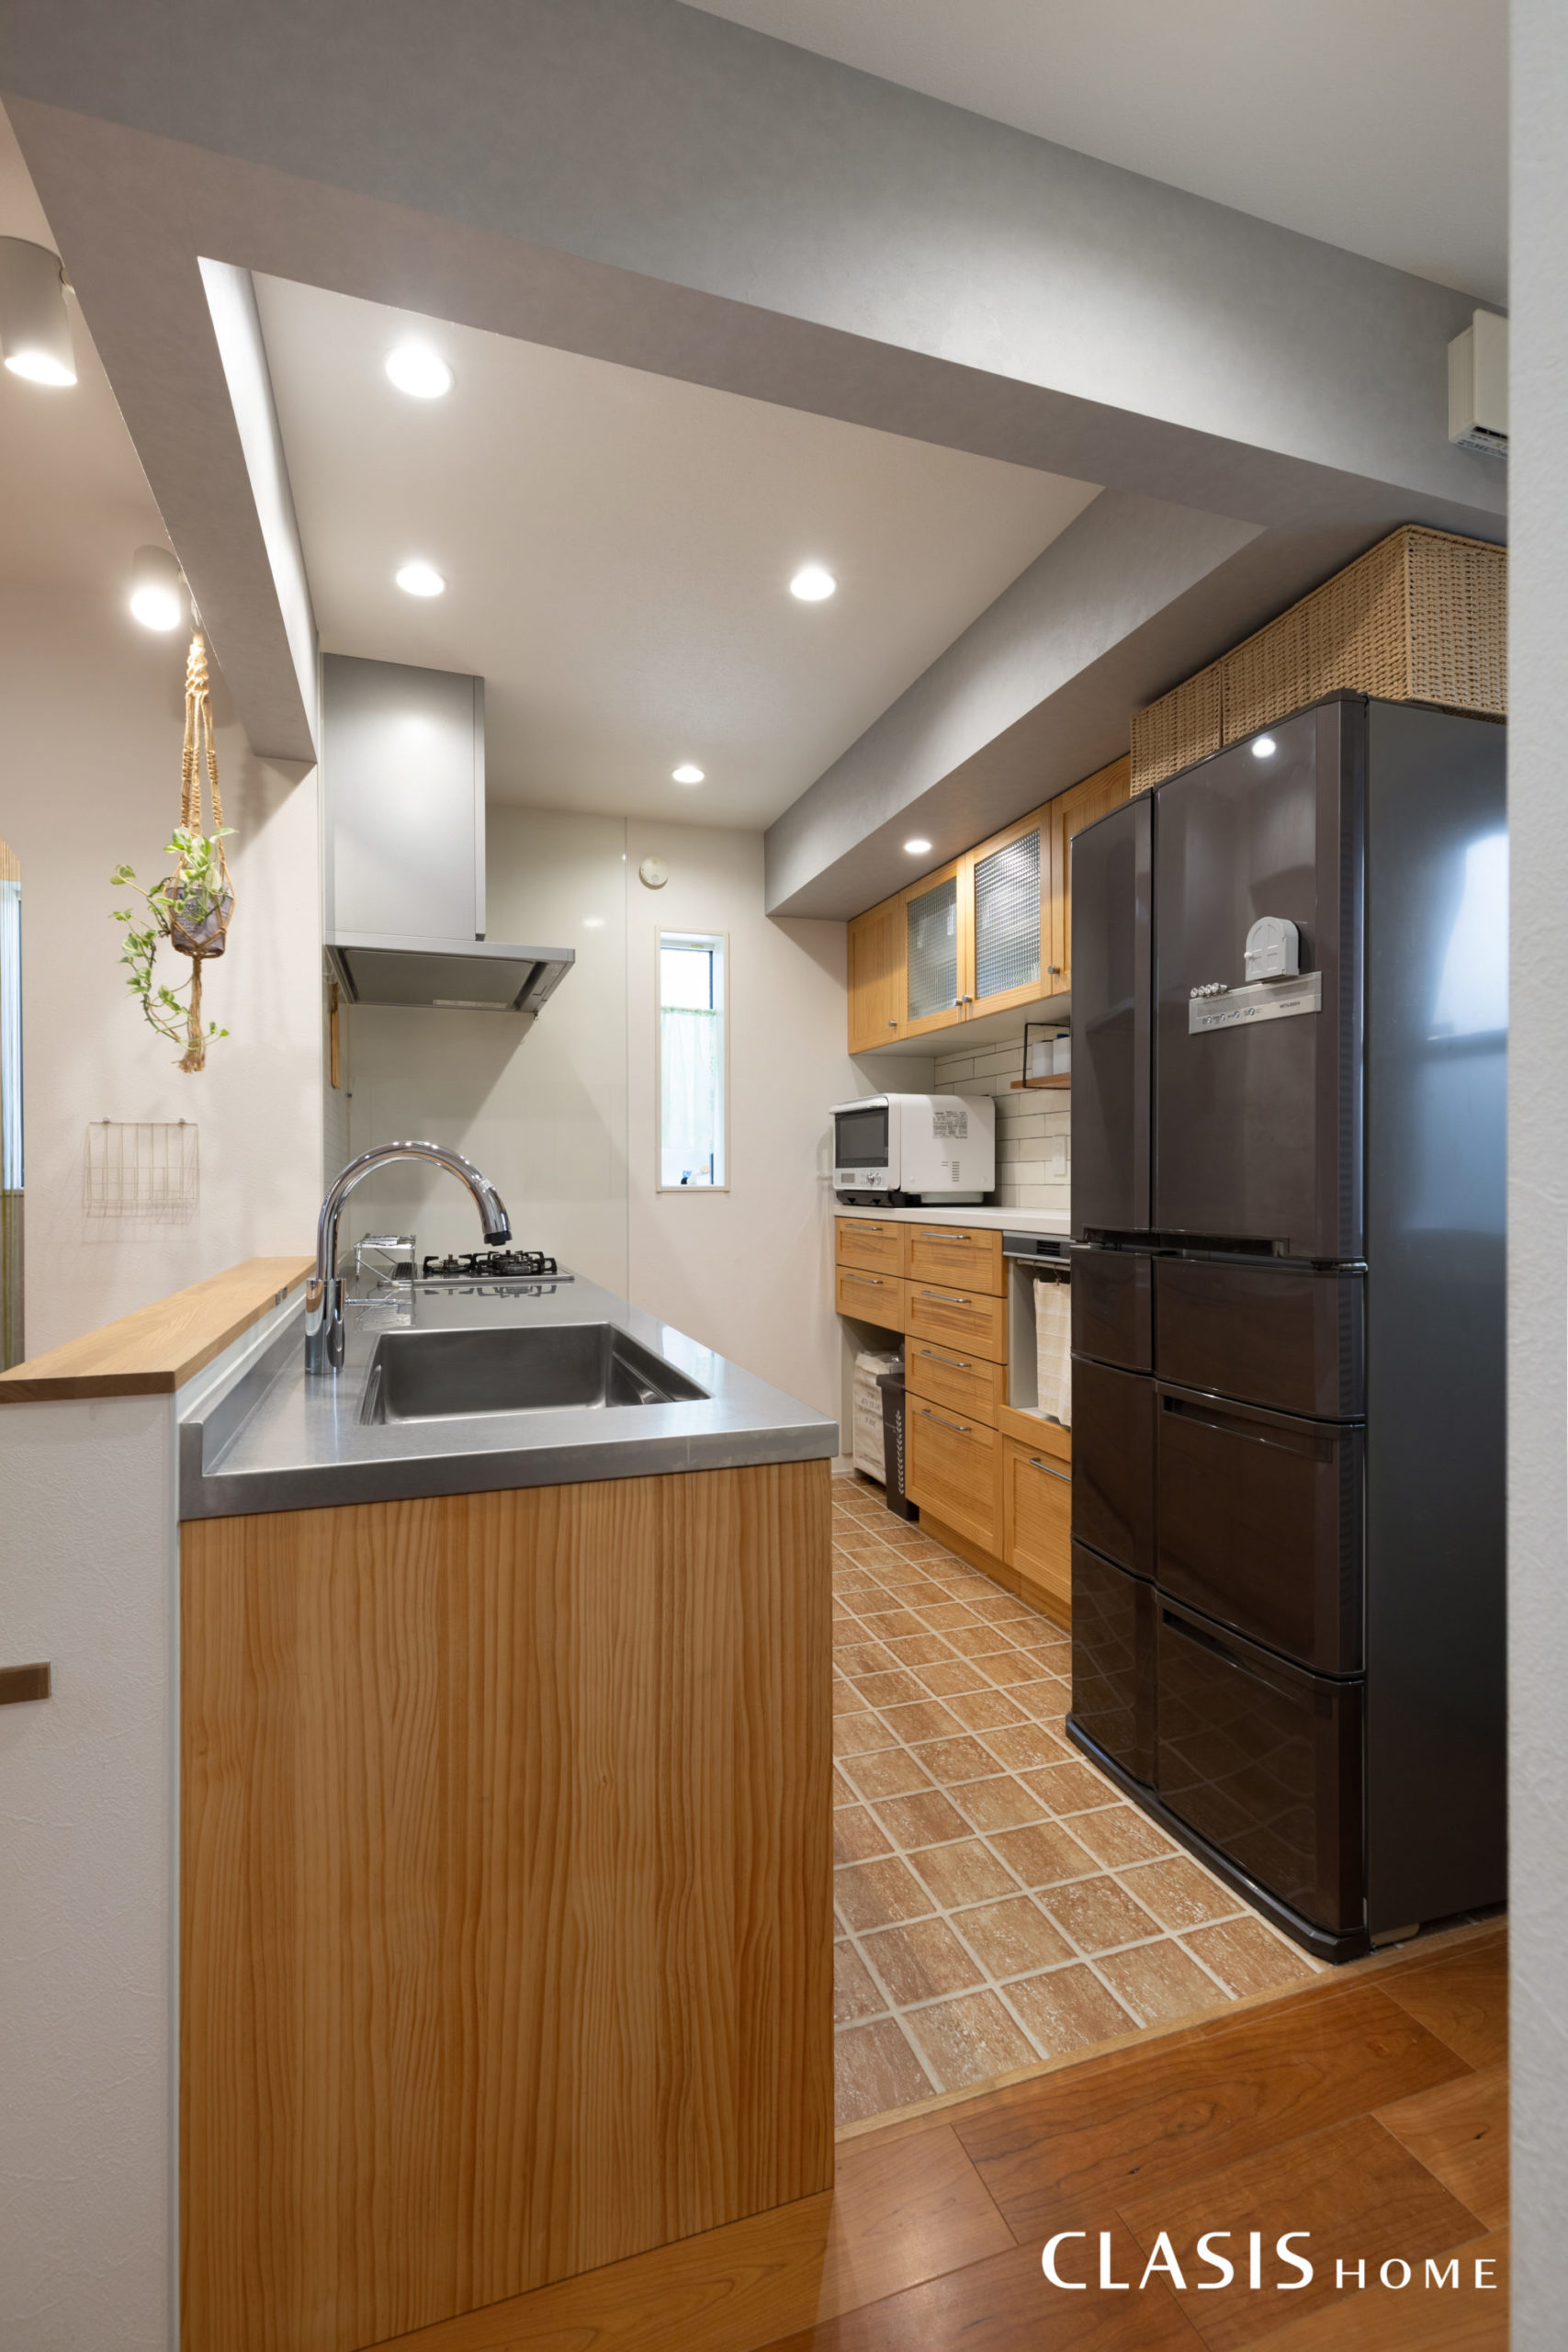 無垢材を使用したキッチンと、温かみのあるタイルでカントリー調のキッチンスペース。